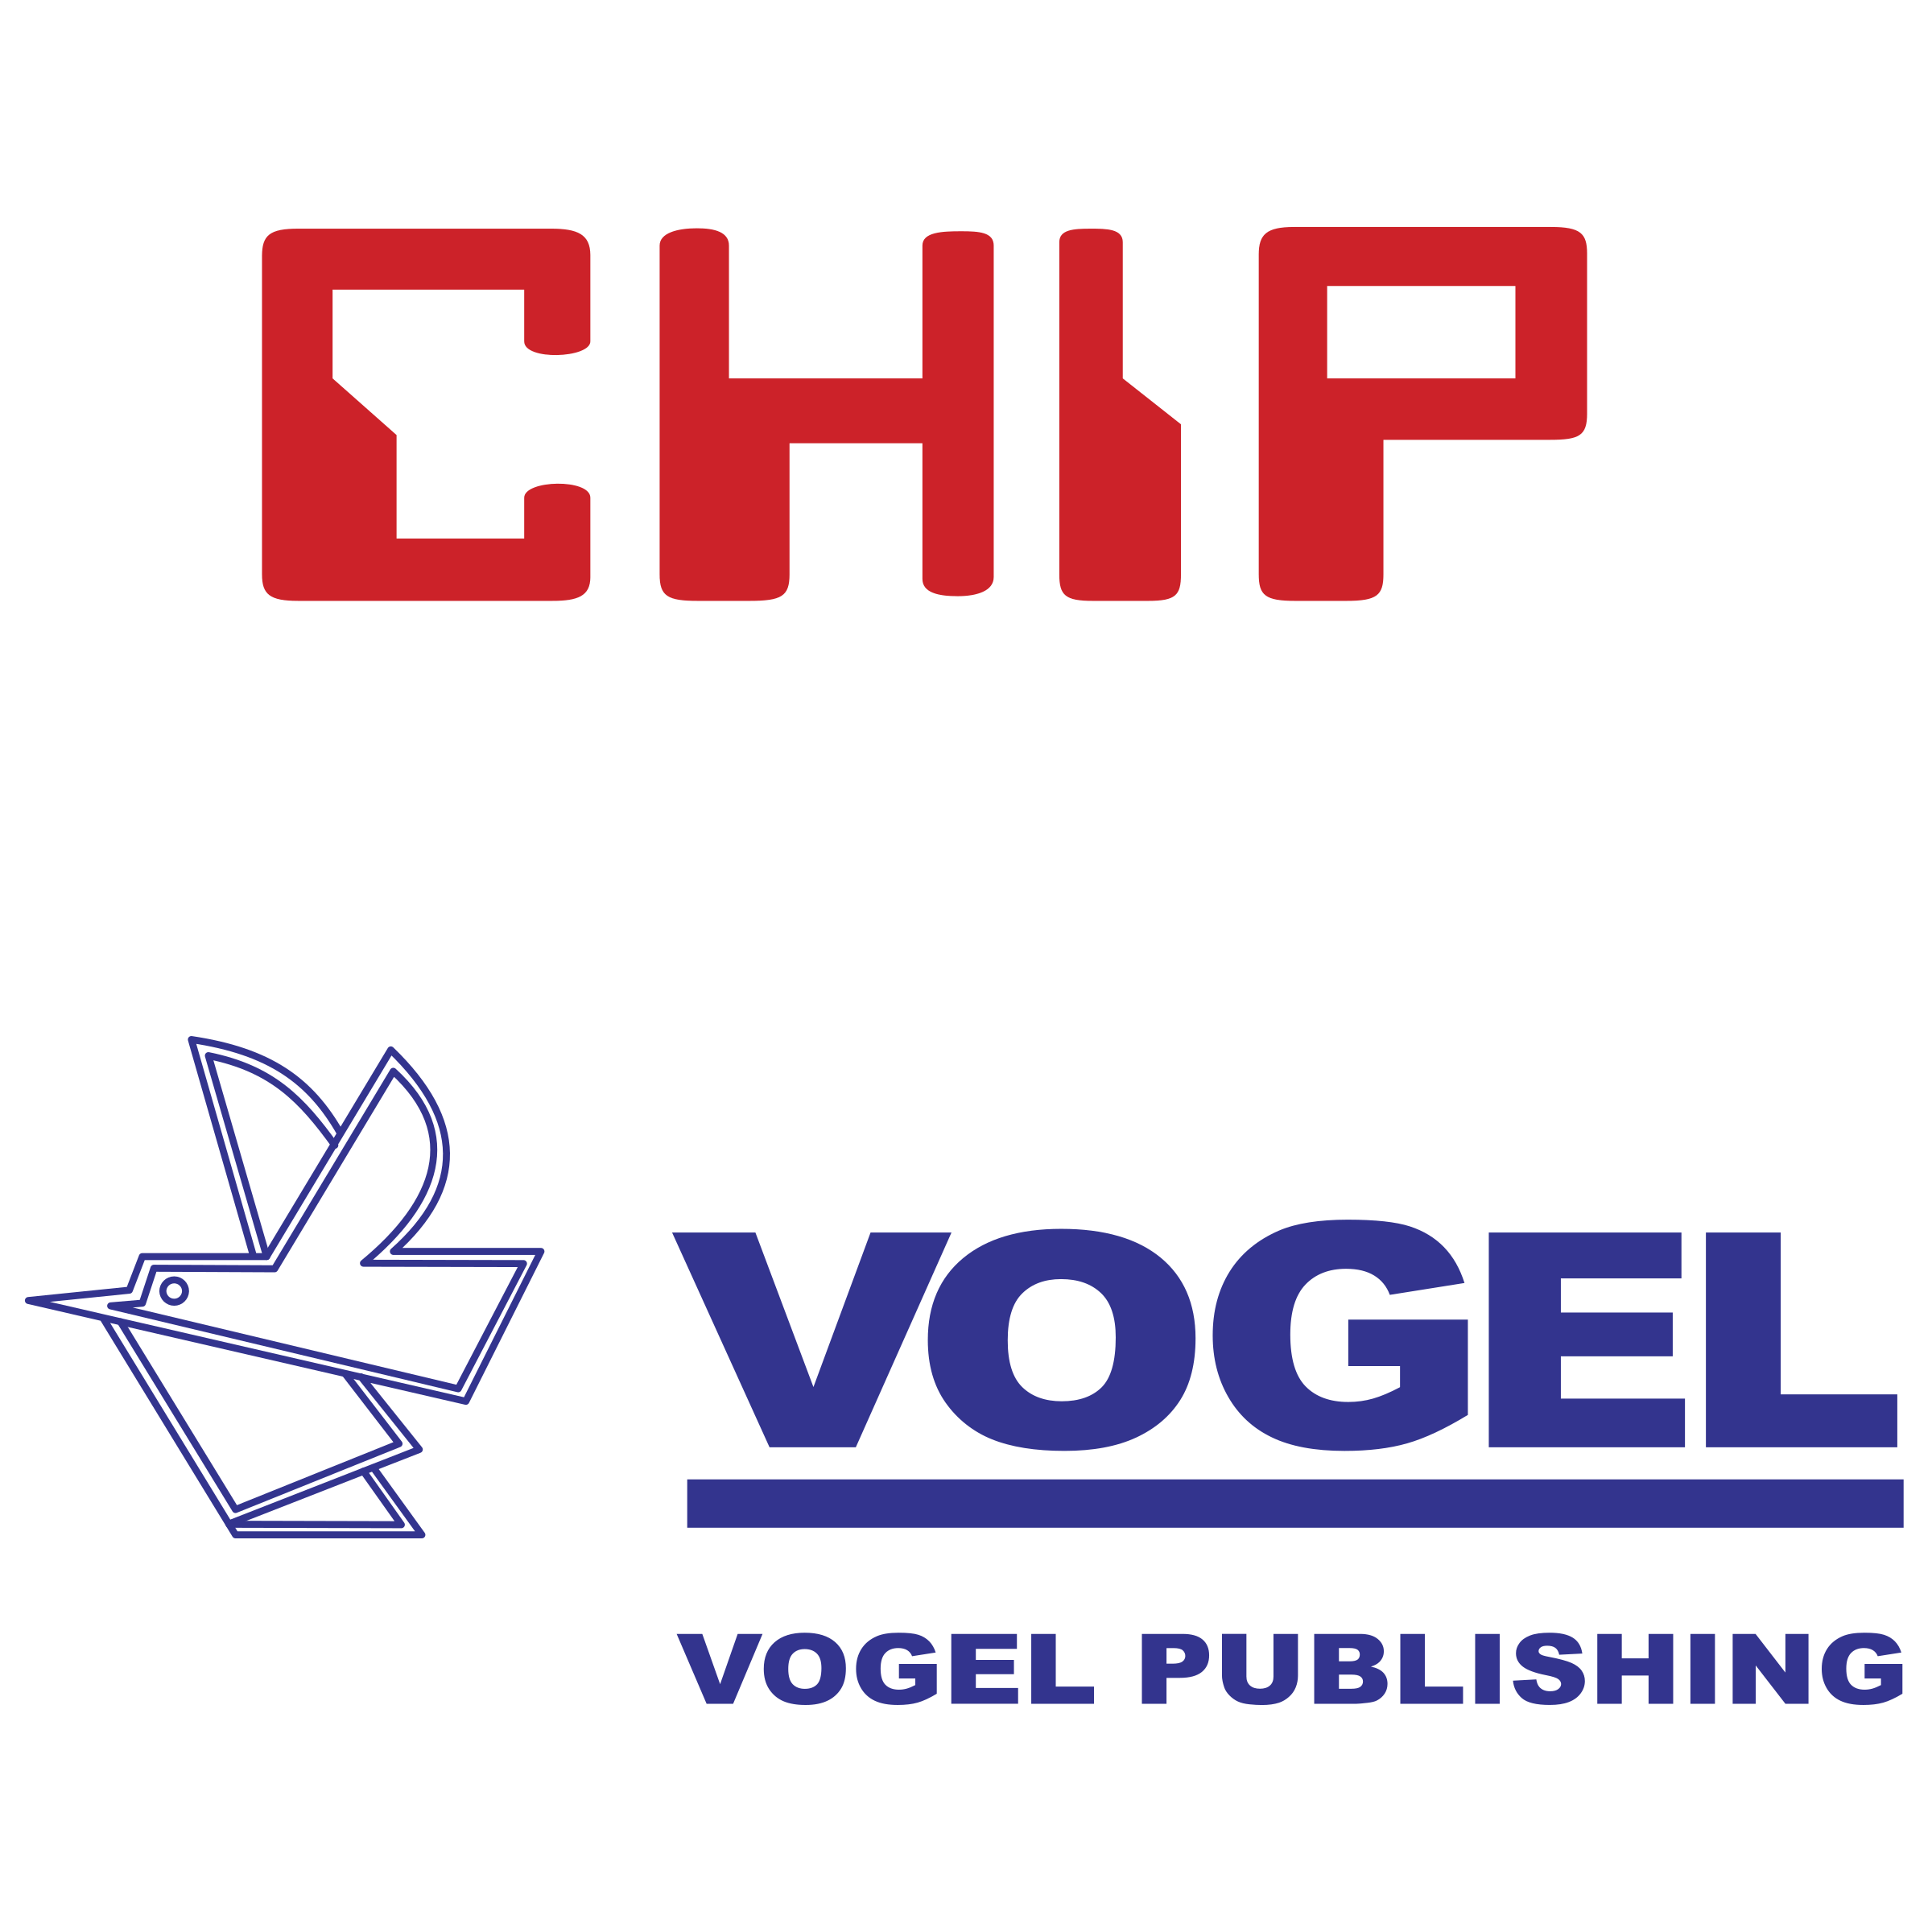 Chip Logo - Chip Vogel Logo PNG Transparent & SVG Vector - Freebie Supply